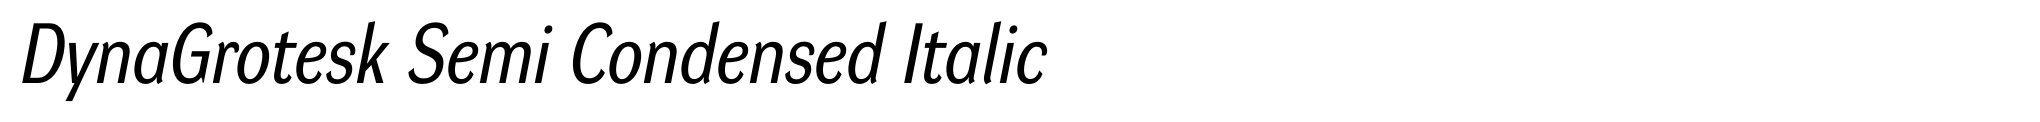 DynaGrotesk Semi Condensed Italic image